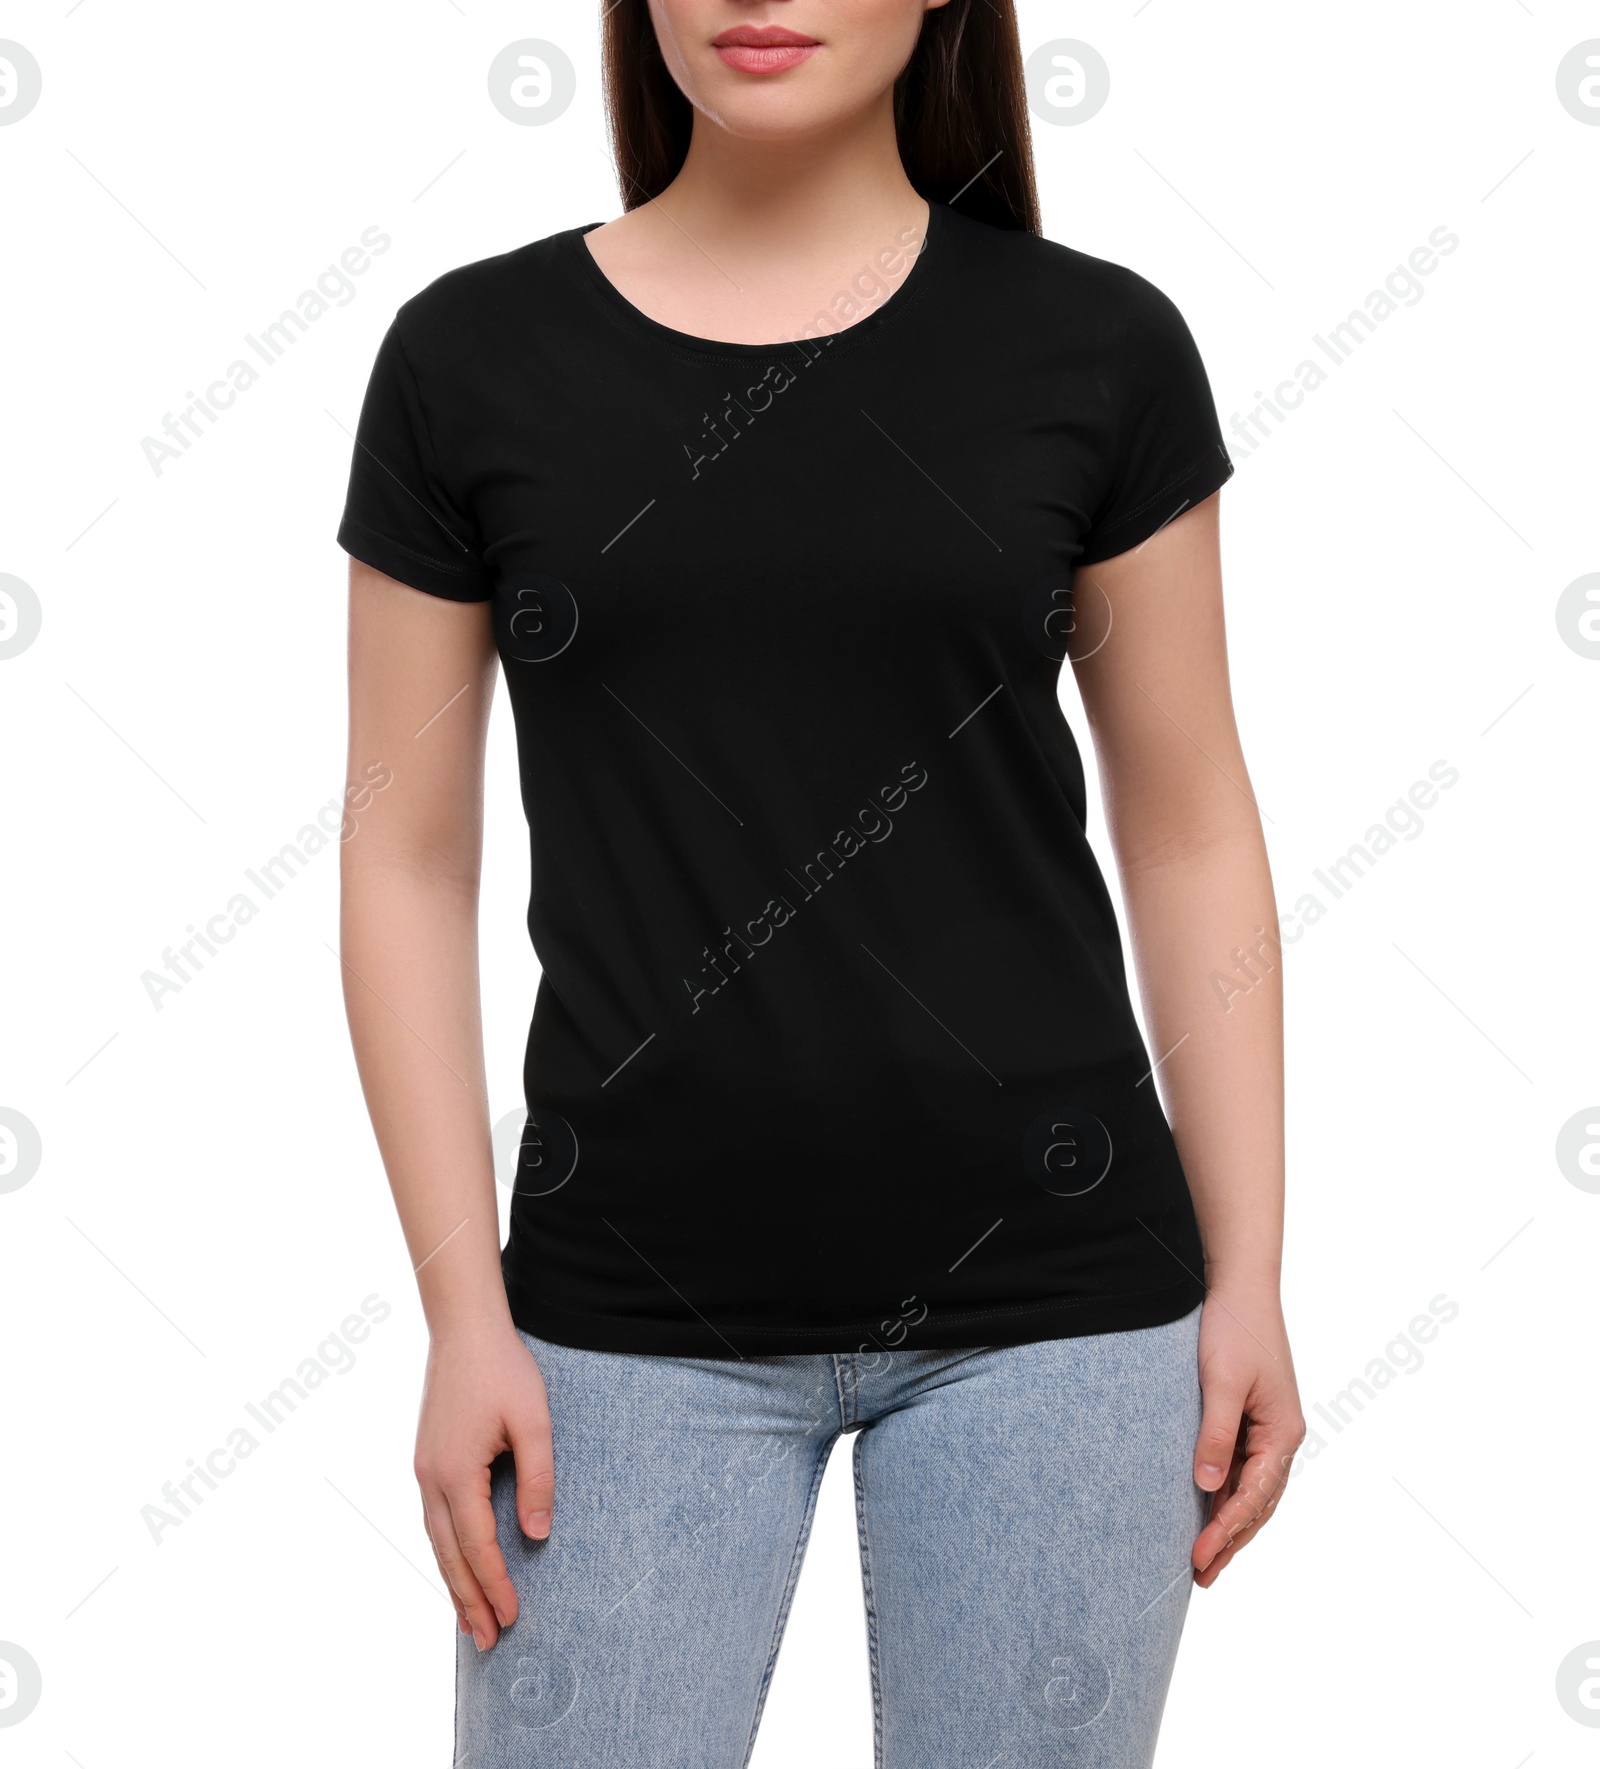 Photo of Woman wearing stylish black T-shirt on white background, closeup